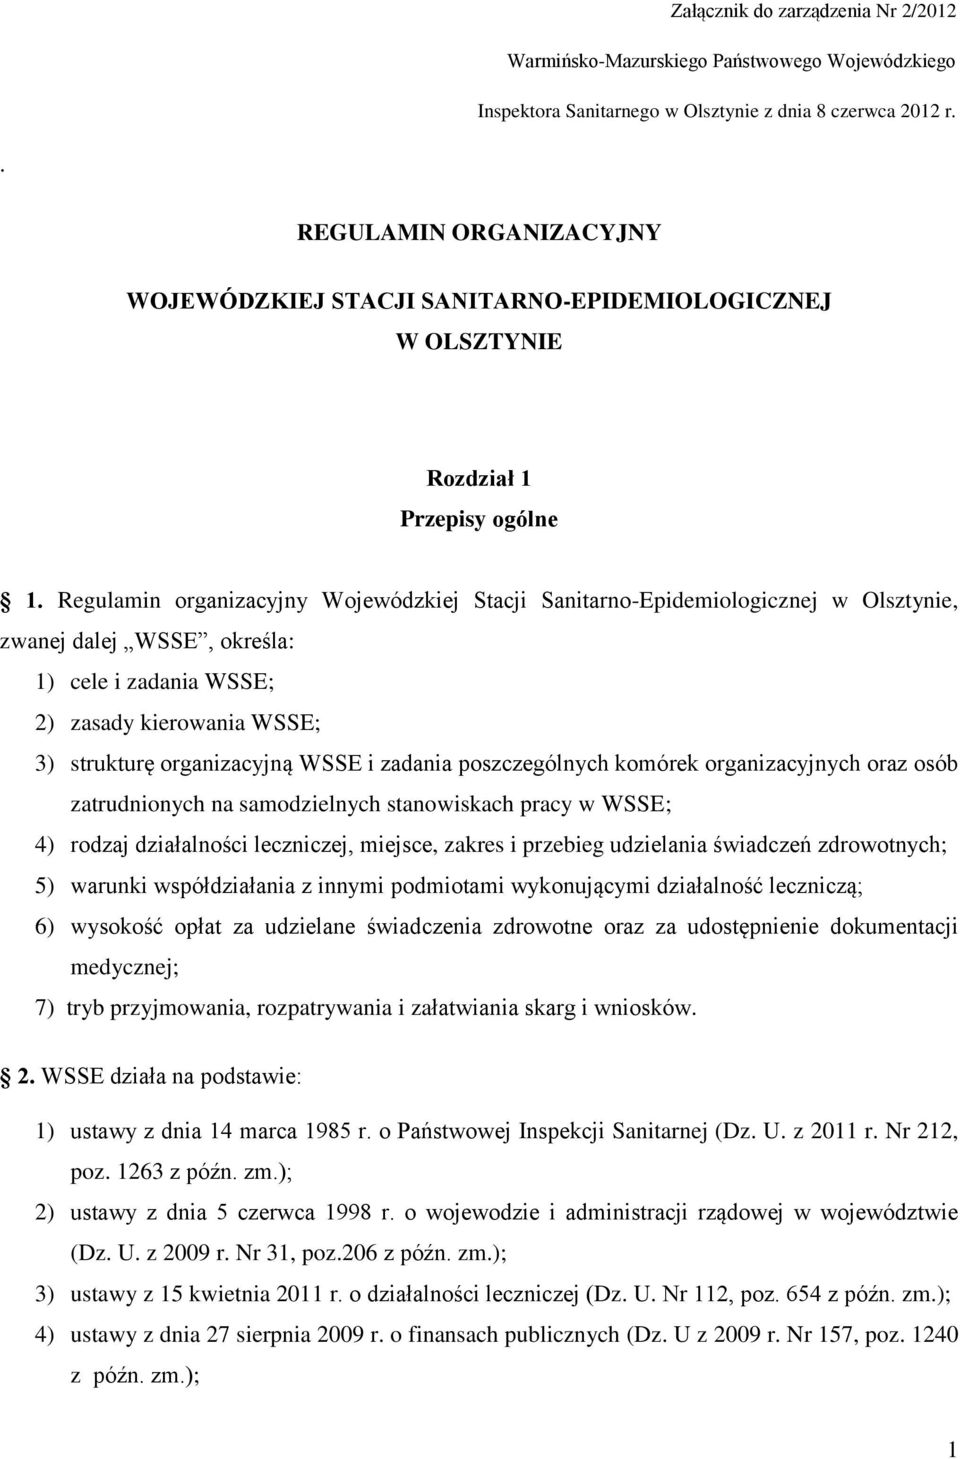 Regulamin organizacyjny Wojewódzkiej Stacji Sanitarno-Epidemiologicznej w Olsztynie, zwanej dalej WSSE, określa: 1) cele i zadania WSSE; 2) zasady kierowania WSSE; 3) strukturę organizacyjną WSSE i